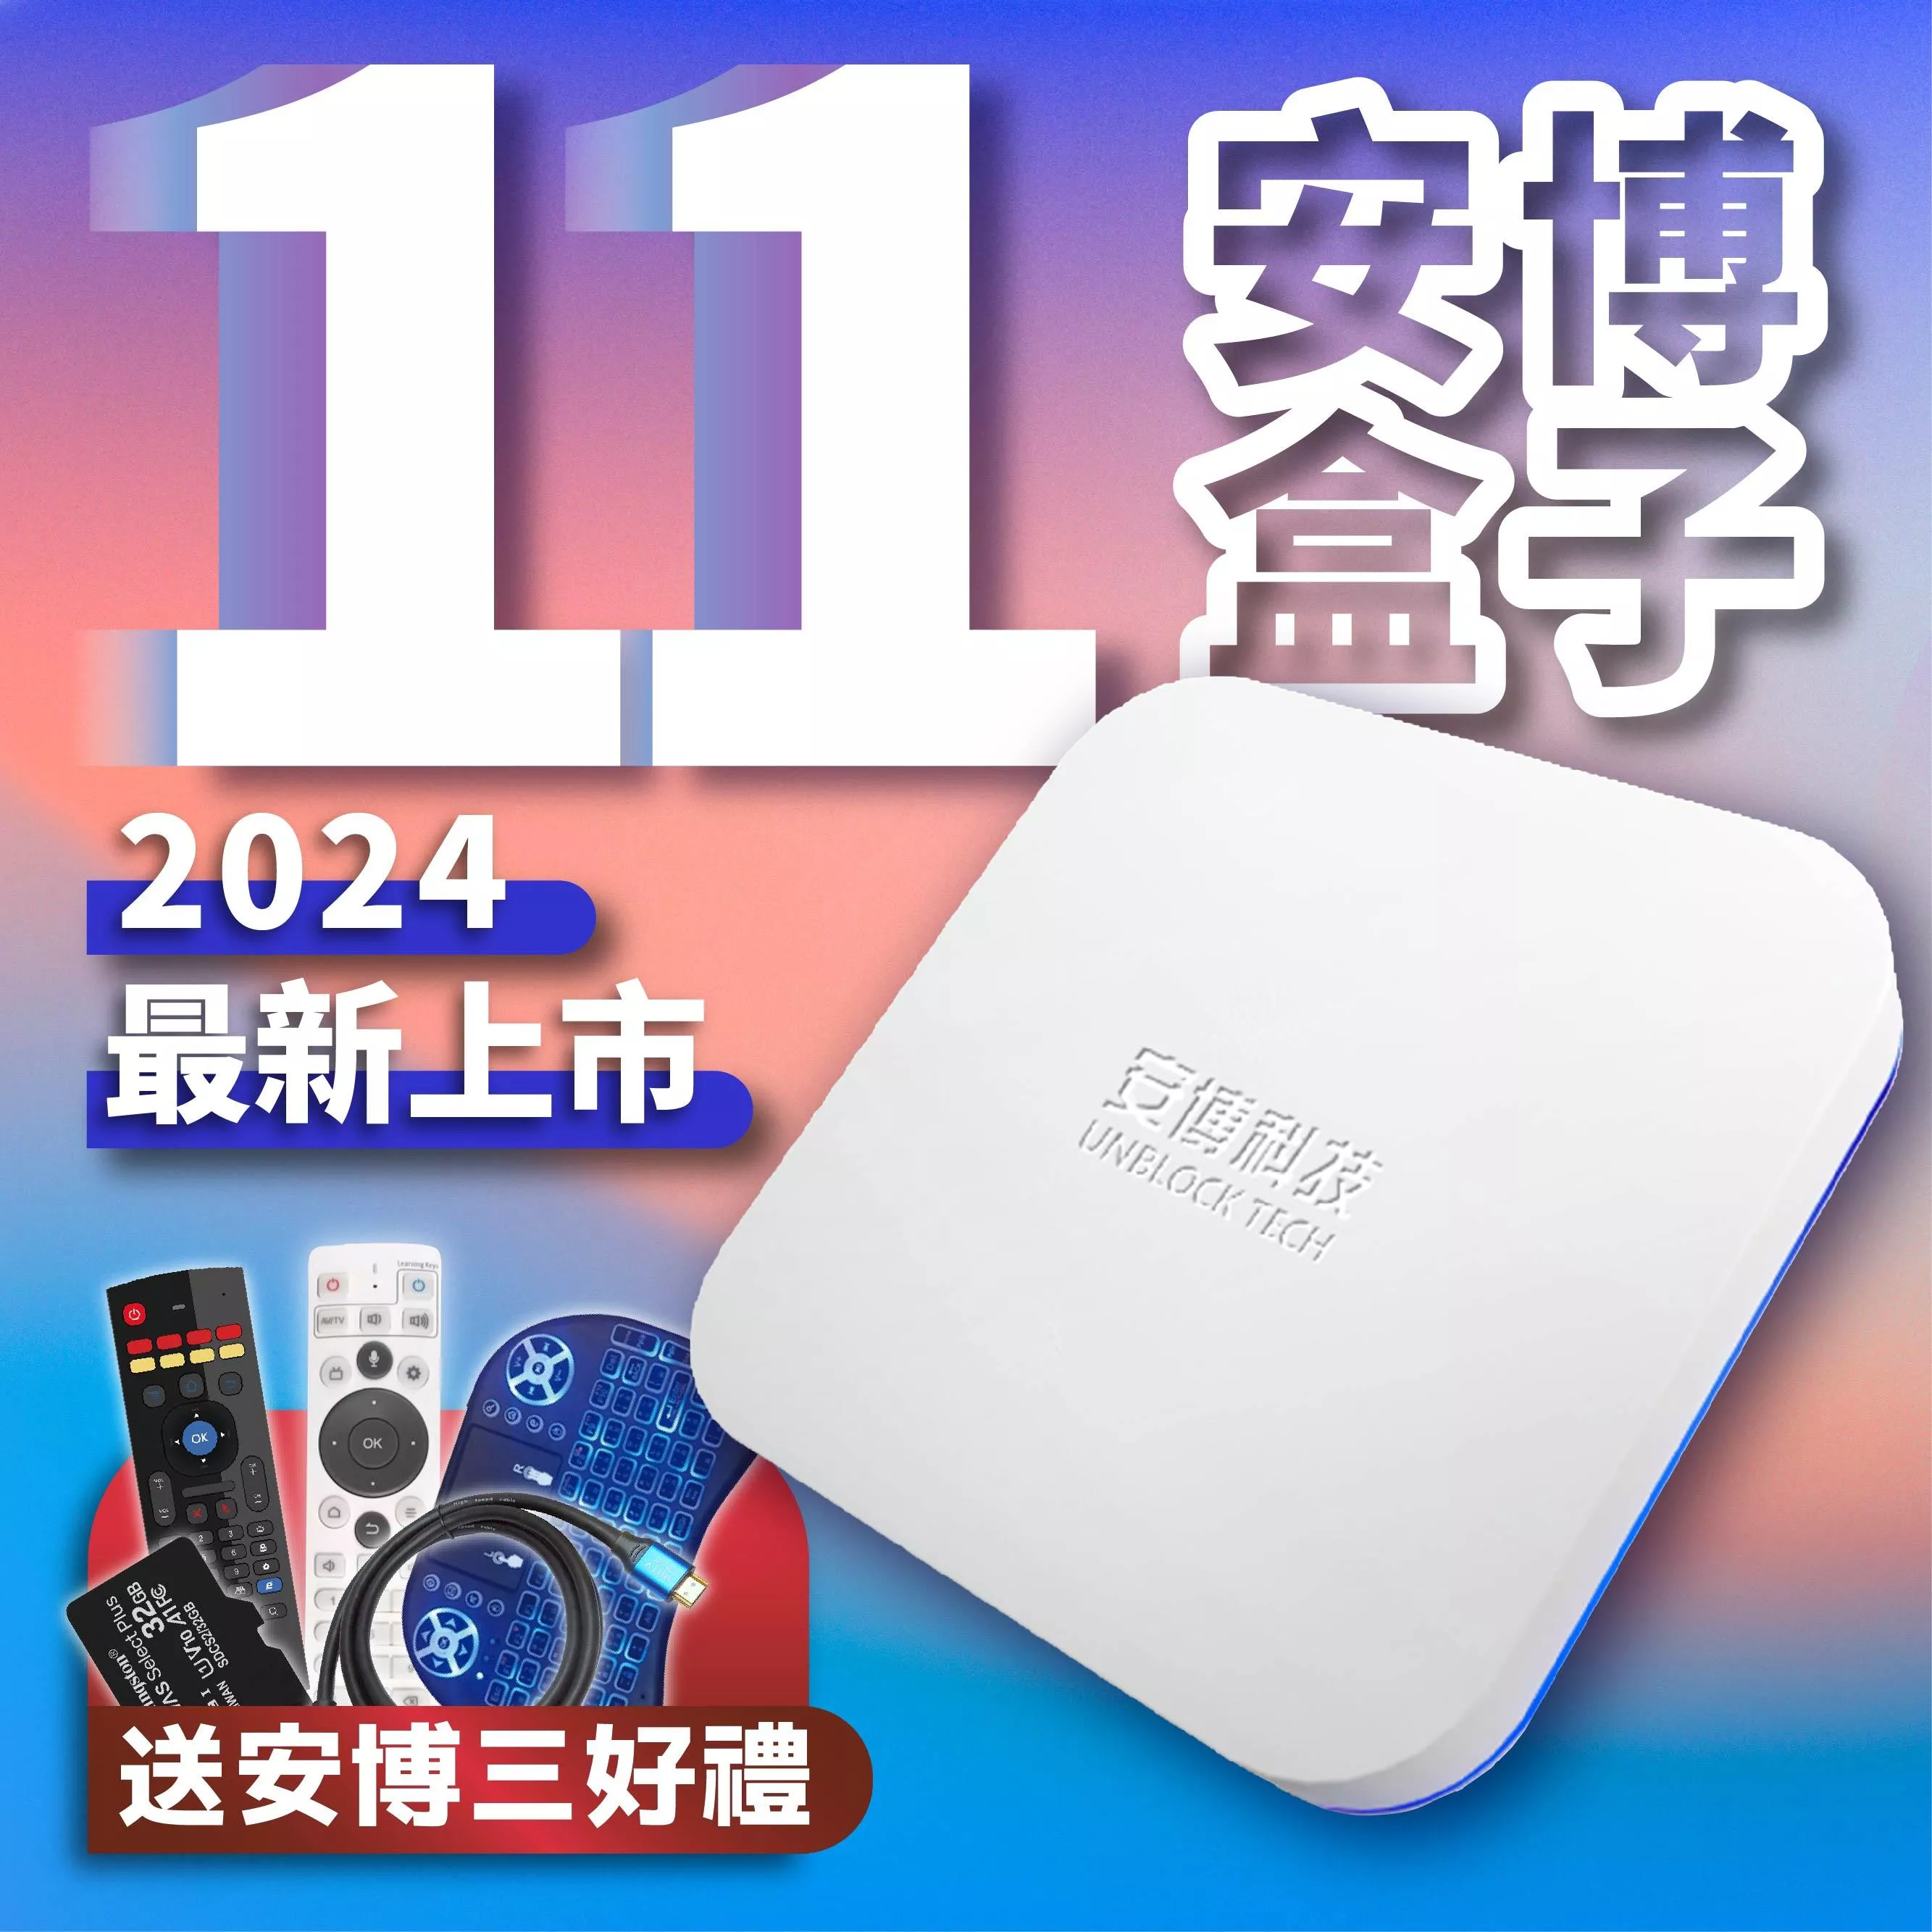 最新版 安博科技 UNBLOCK TECH UBOX 10 - その他